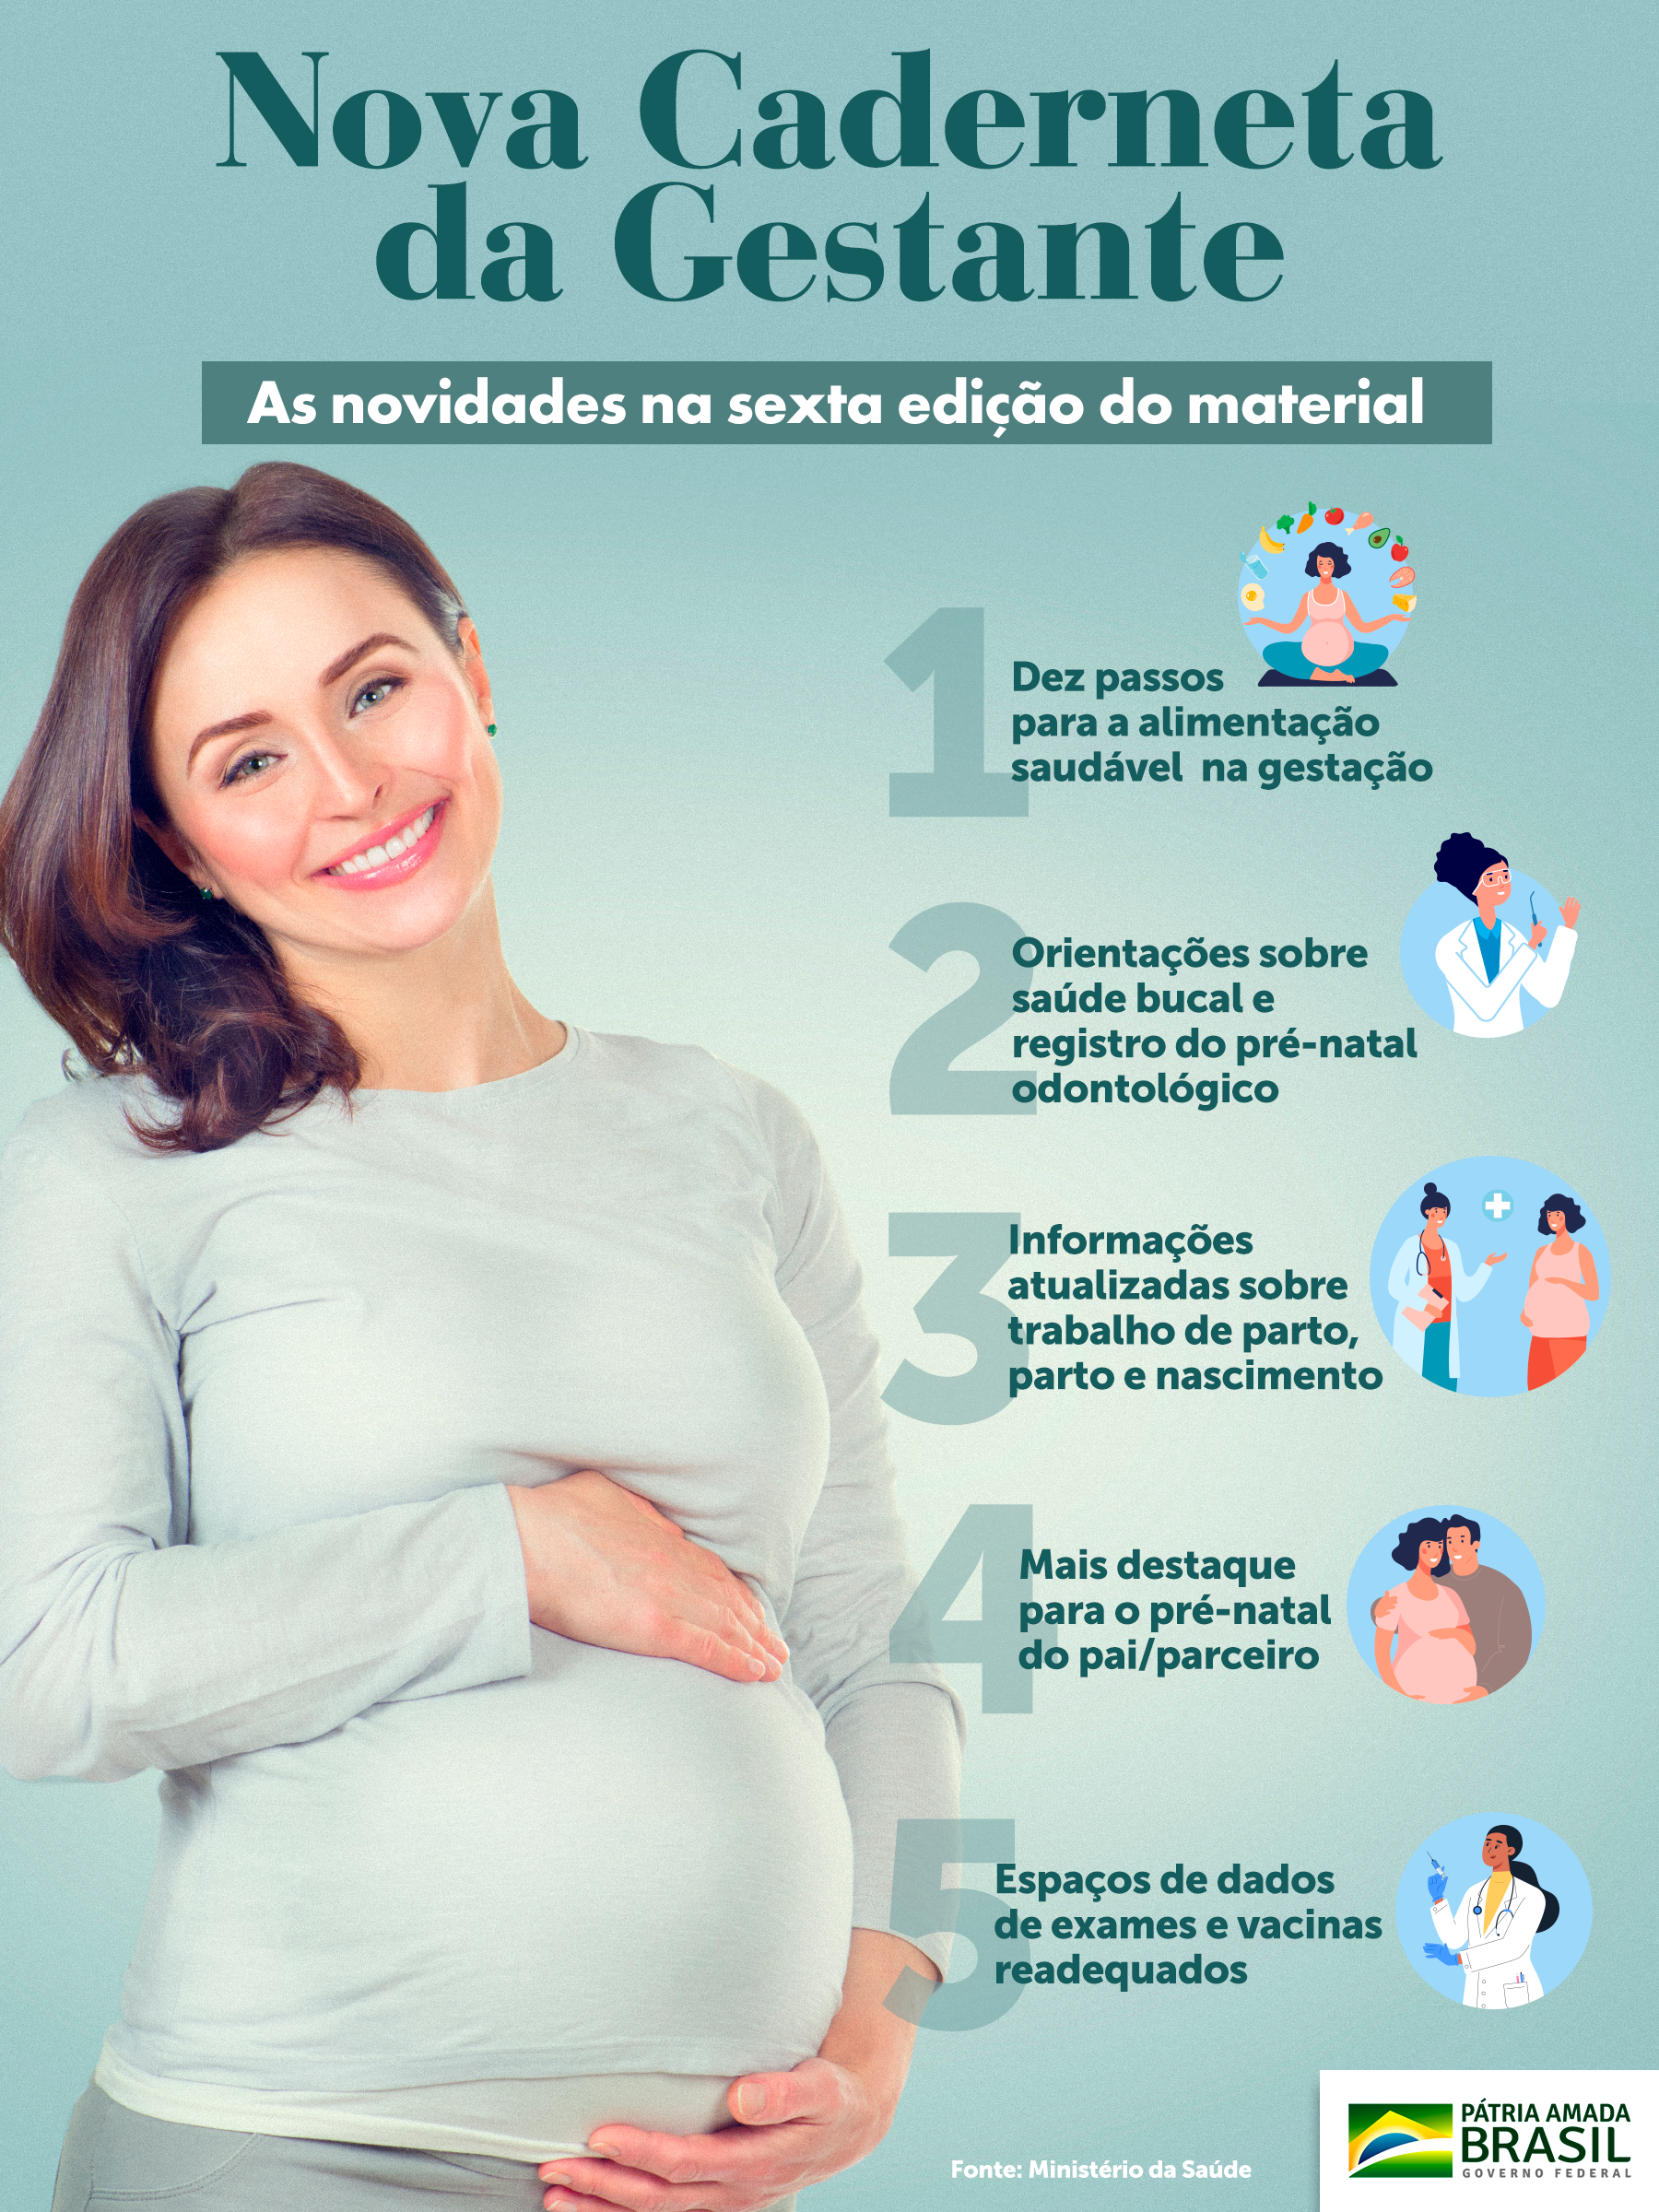 Nova versão da Caderneta da Gestante traz orientações sobre alimentação, saúde bucal, trabalho de parto e nascimento